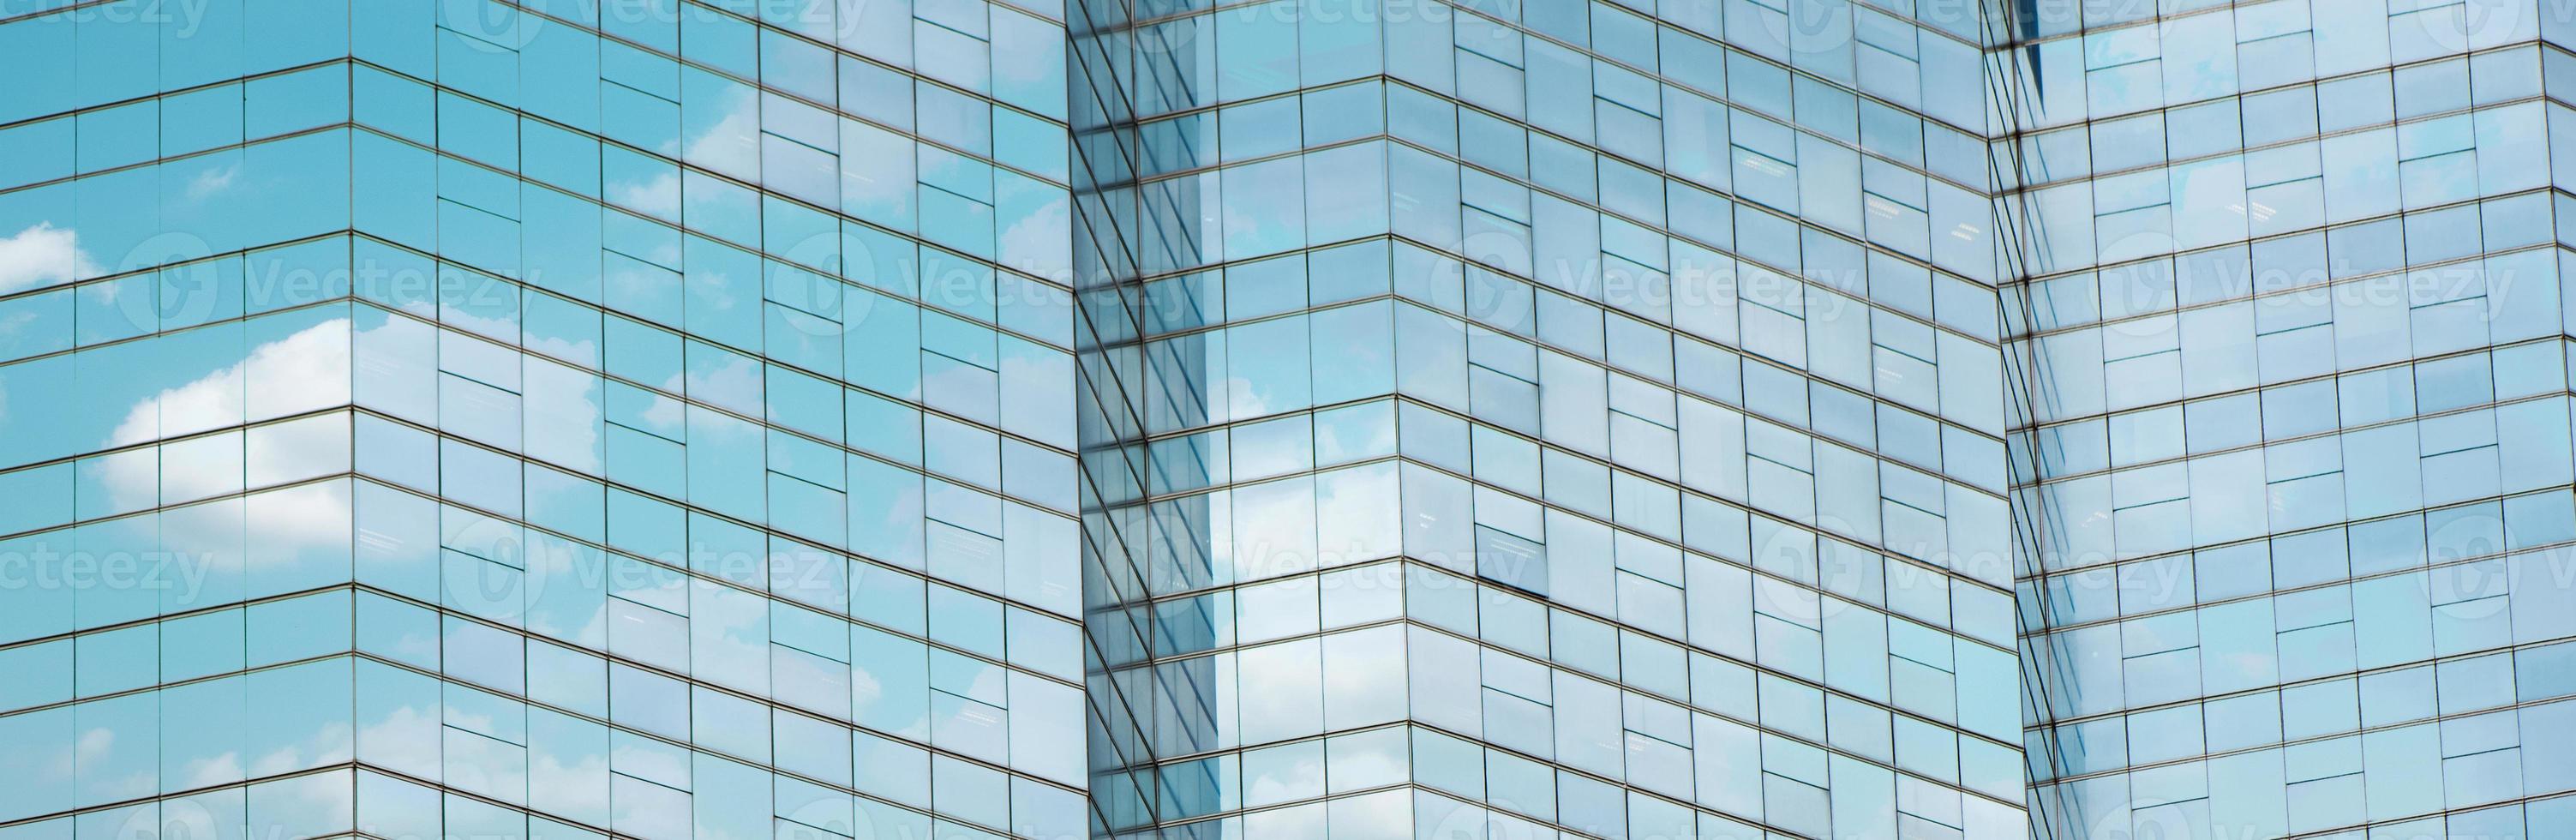 nuvola riflessa nelle finestre di un moderno edificio per uffici. foto